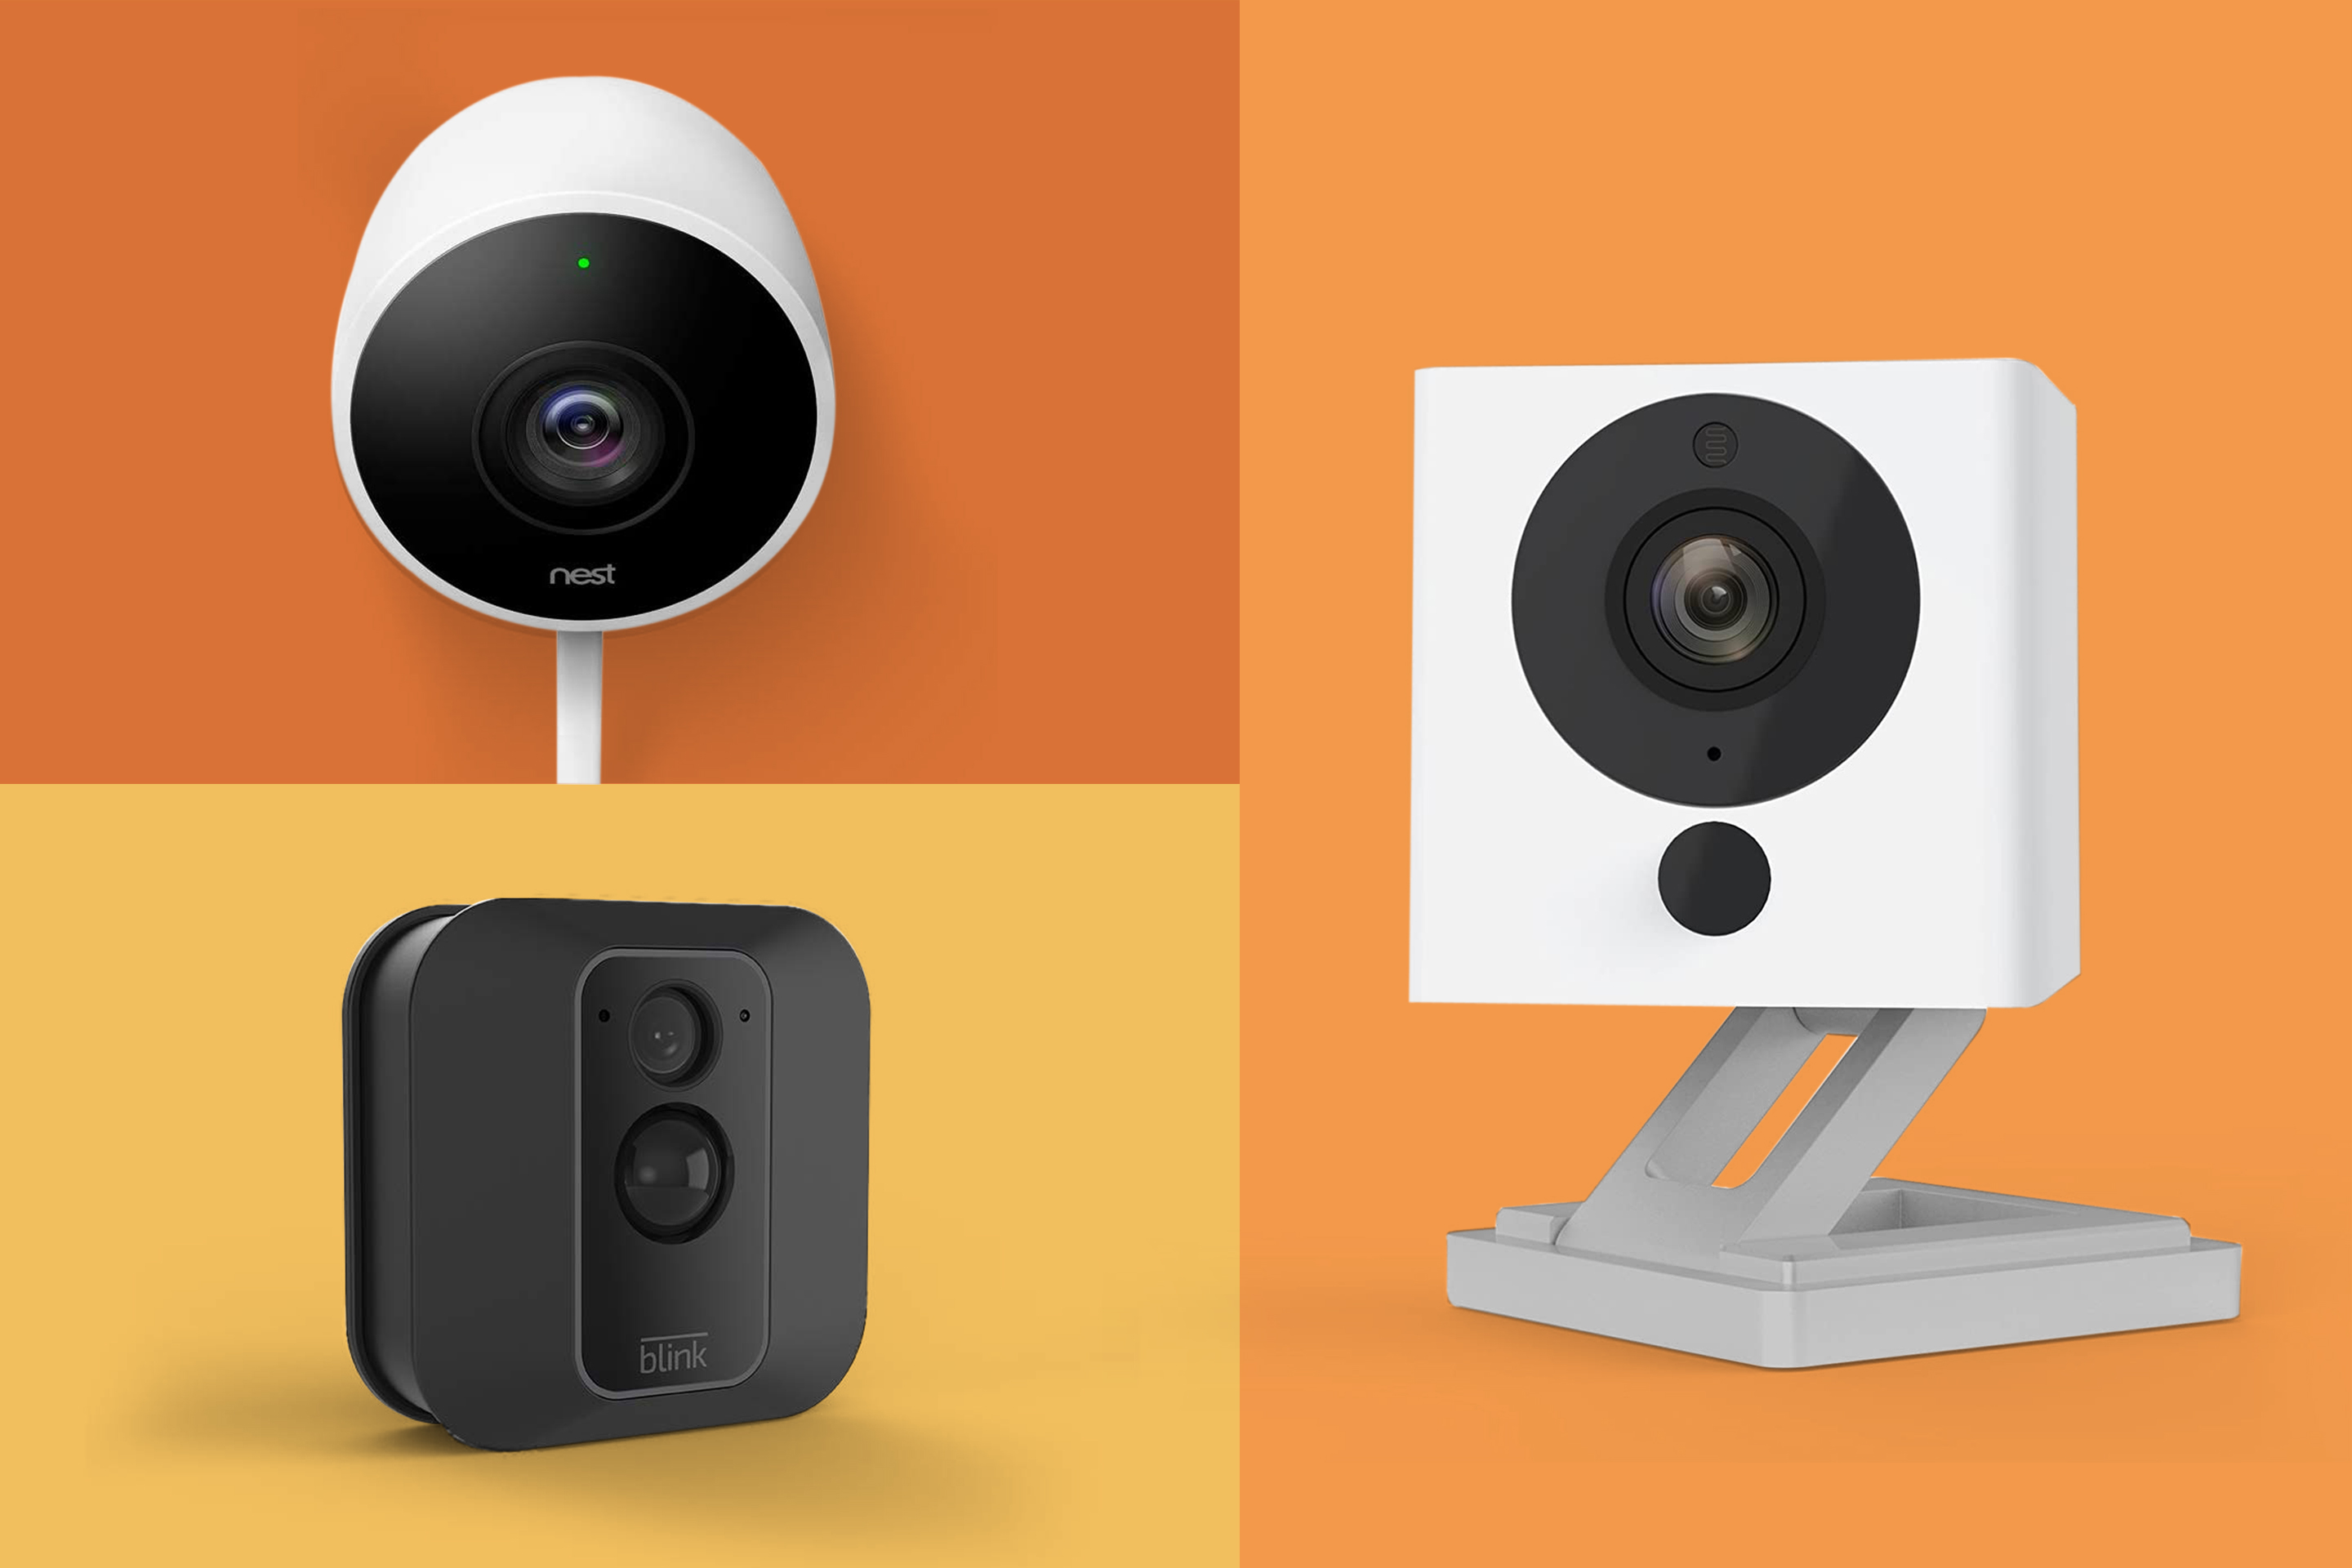 home surveillance cameras